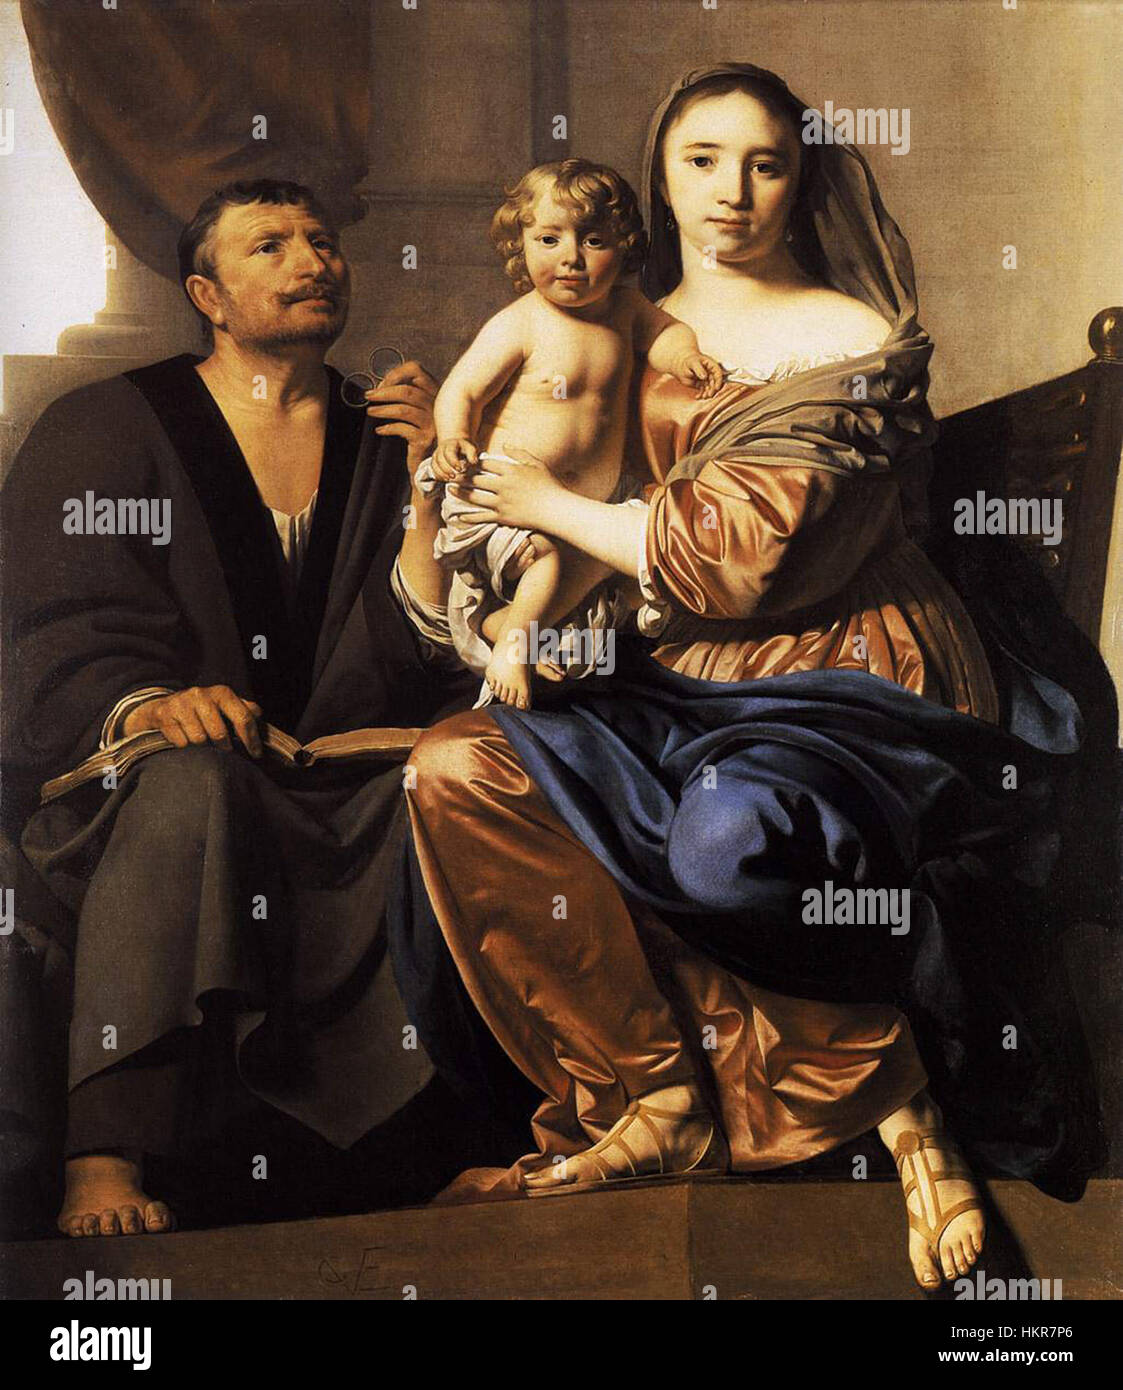 Caesar van Everdingen The Holy Family 1660 Stock Photo